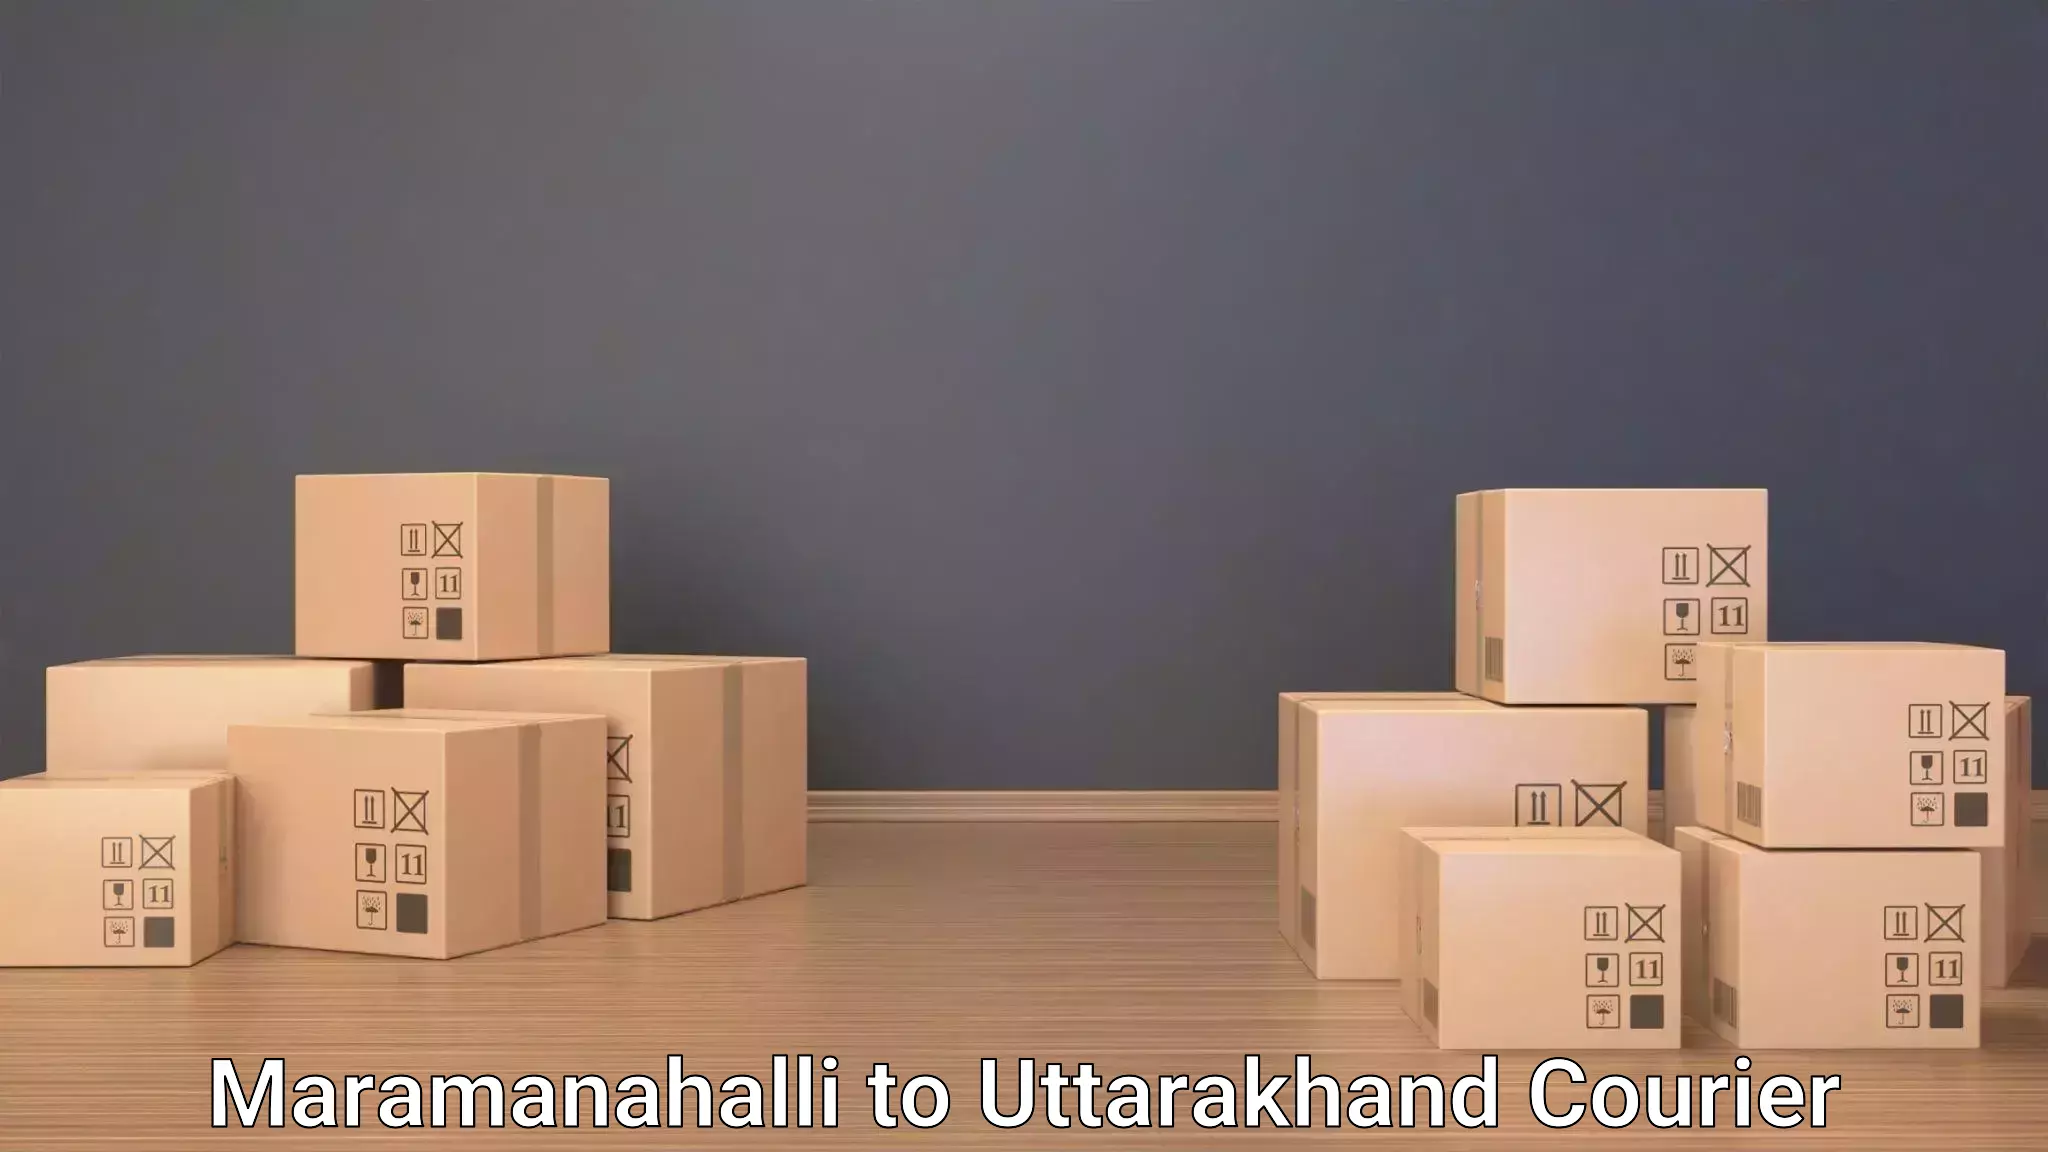 Luggage transport solutions Maramanahalli to Uttarakhand